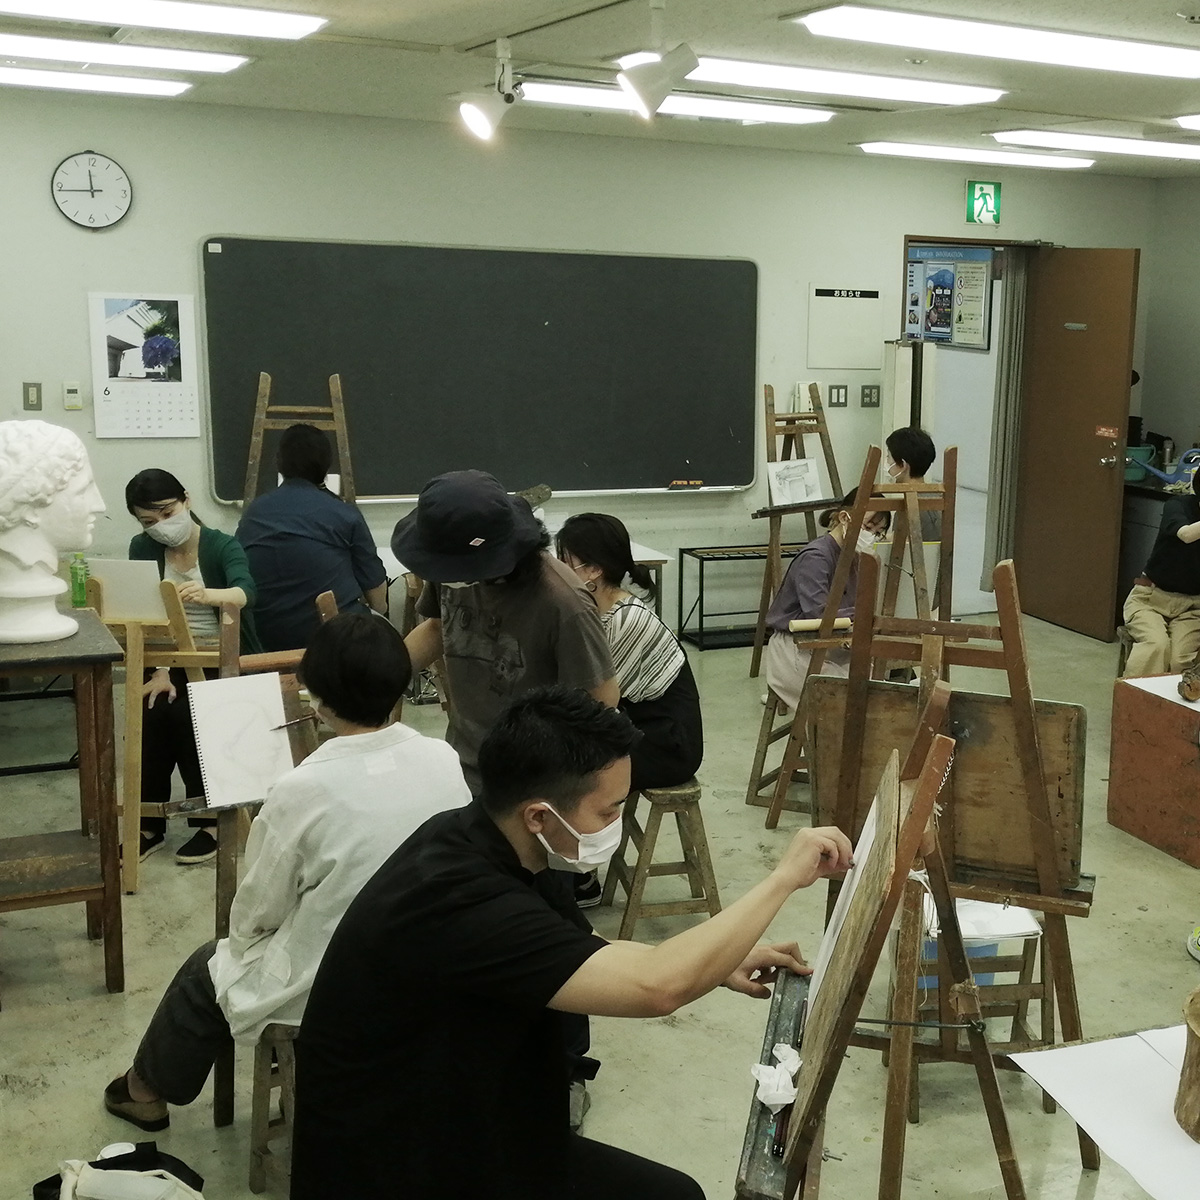 初心者から学ぶ基本デッサン|ファッションイラスト・おしゃれイラスト絵画教室|スタジオトリコ|東京|